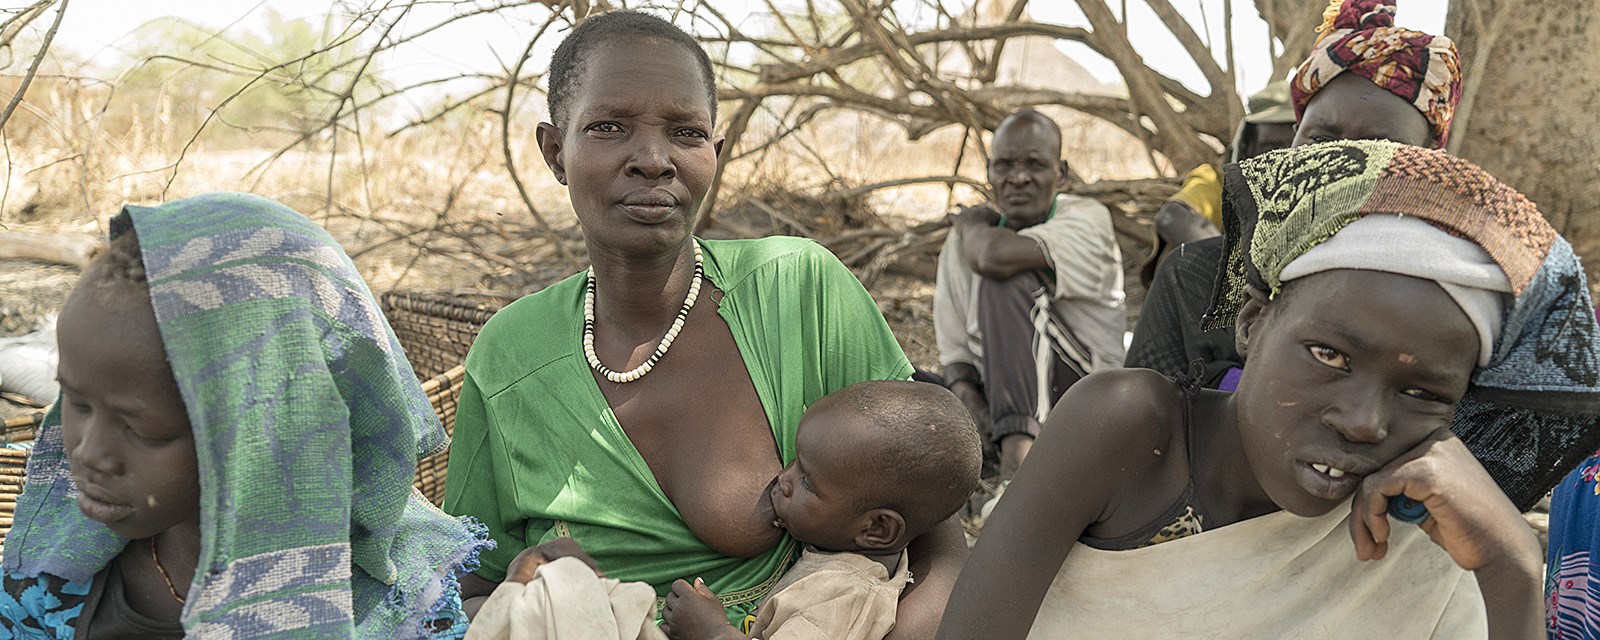 Sør-Sudan. Familien har vært på flukt i fem døgn, og overlever på det de finner i naturen.